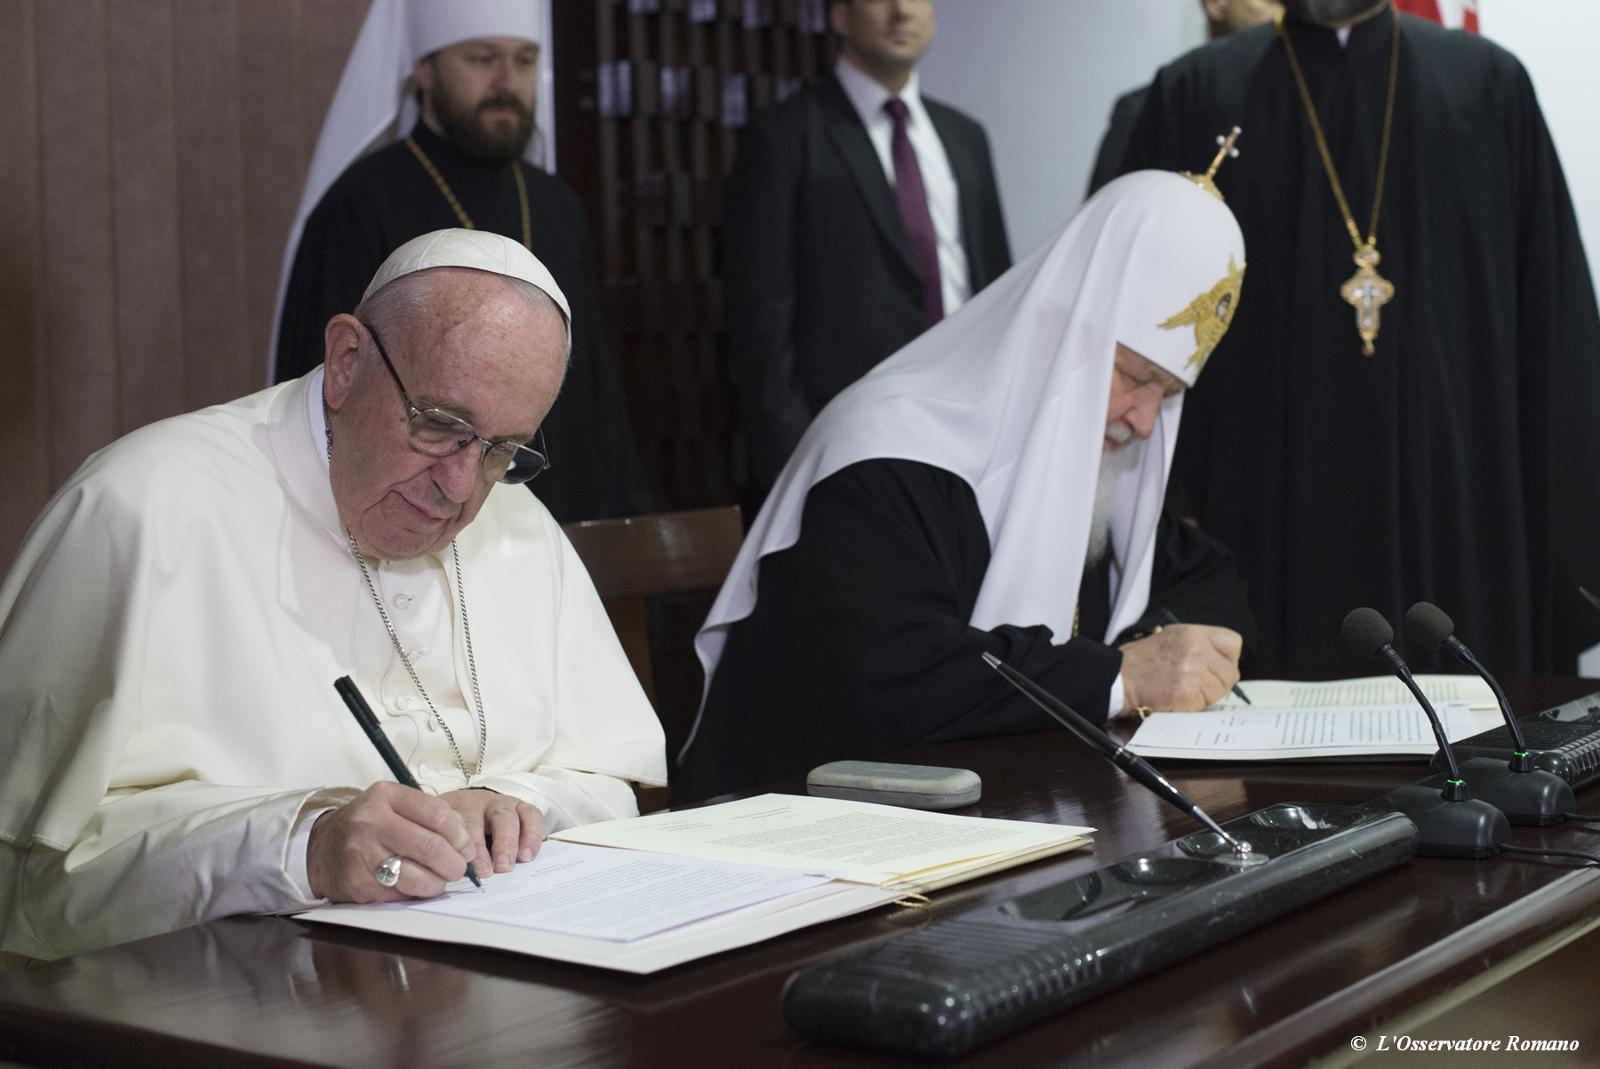 Påve och patriark i historiskt möte